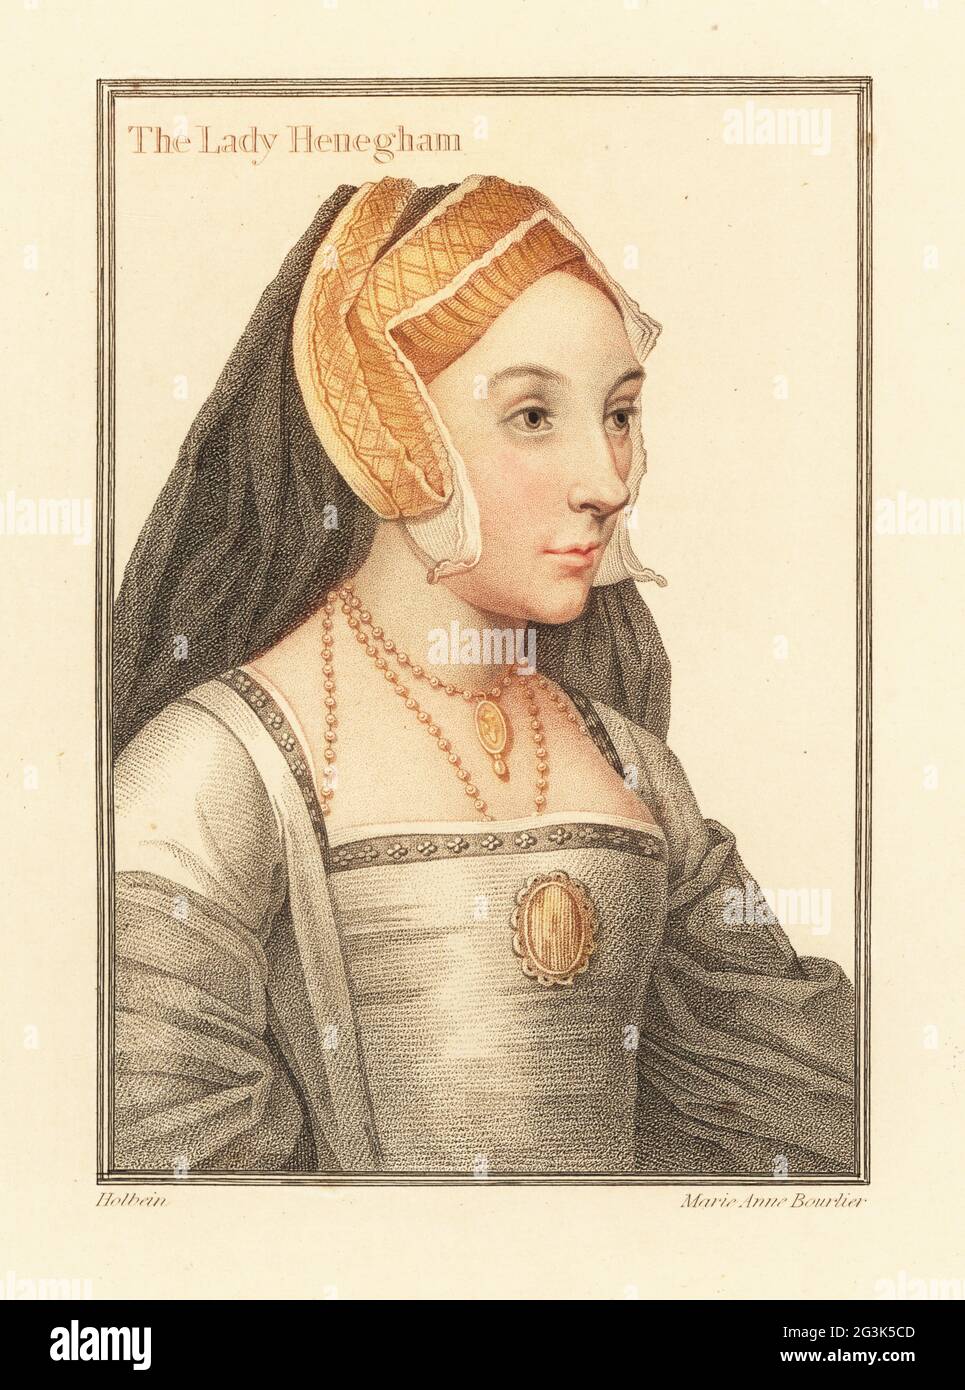 Mary Shelton, Lady Heveningham, vers 1510–1563, épouse de sir Anthony Heveningham de Ketteringham, maîtresse du roi Henri VIII Rédacteur du manuscrit de Devonshire. Dans l'adresse de la hotte à pignon. La Lady Henegham. Gravure à l'effigie d'une plaque de coperplate de couleur main par Marie Anne Bourlier après un portrait de Hans Holbein le plus jeune à partir d'imitations de dessins originaux de Hans Holbein, John Chamberlaine, Londres, 1812. Banque D'Images